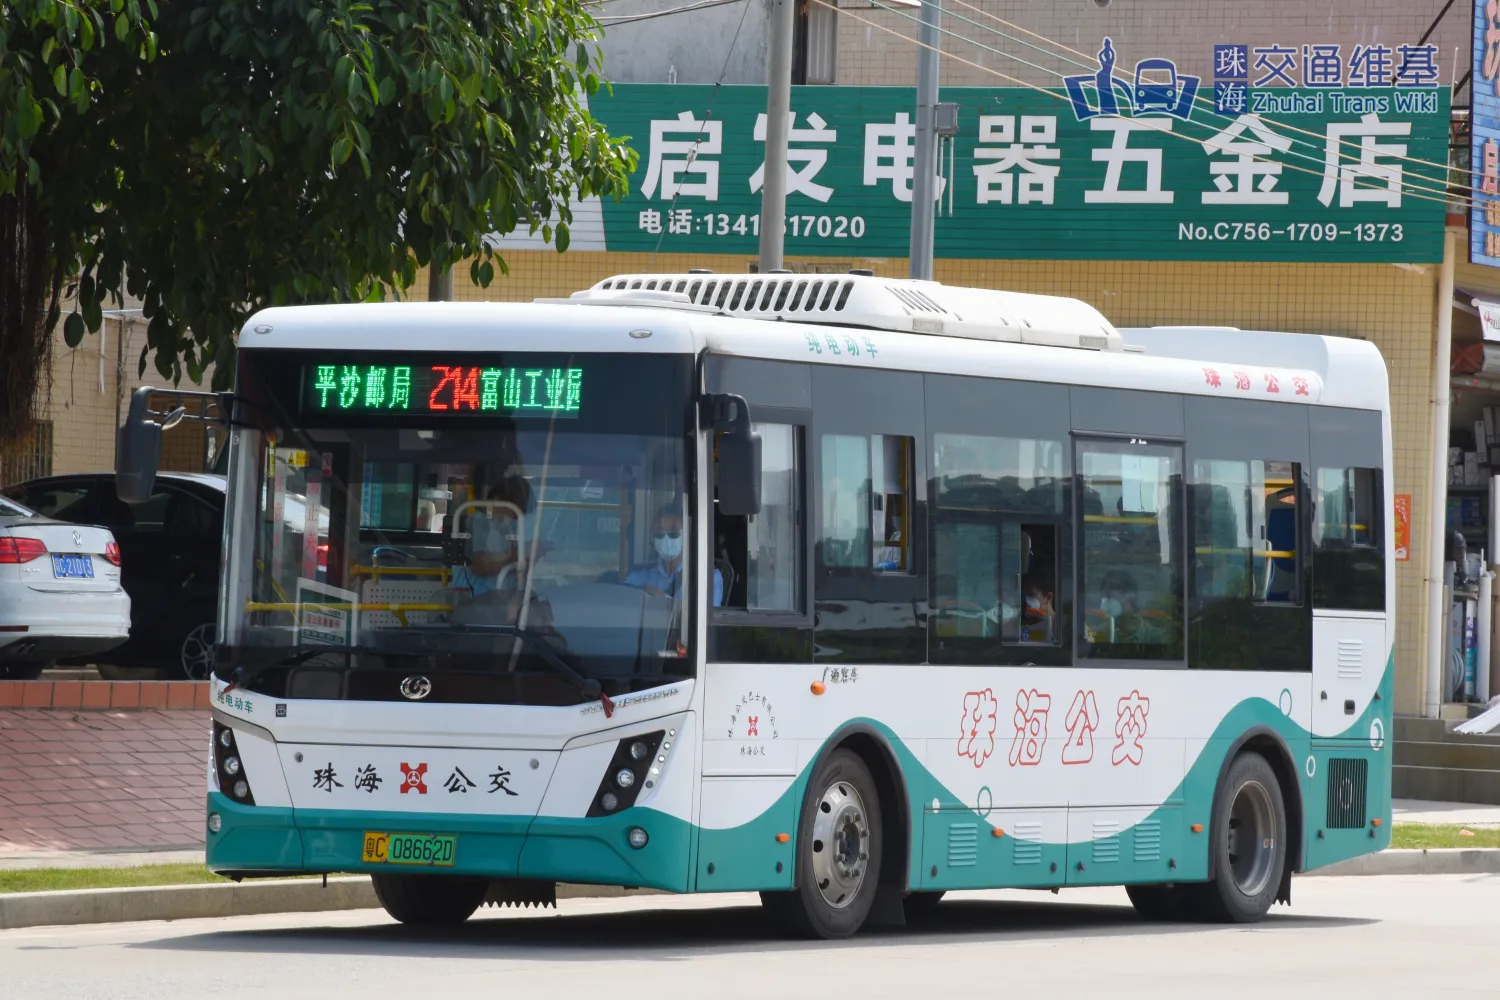 珠海公交21路线 - 珠海交通维基